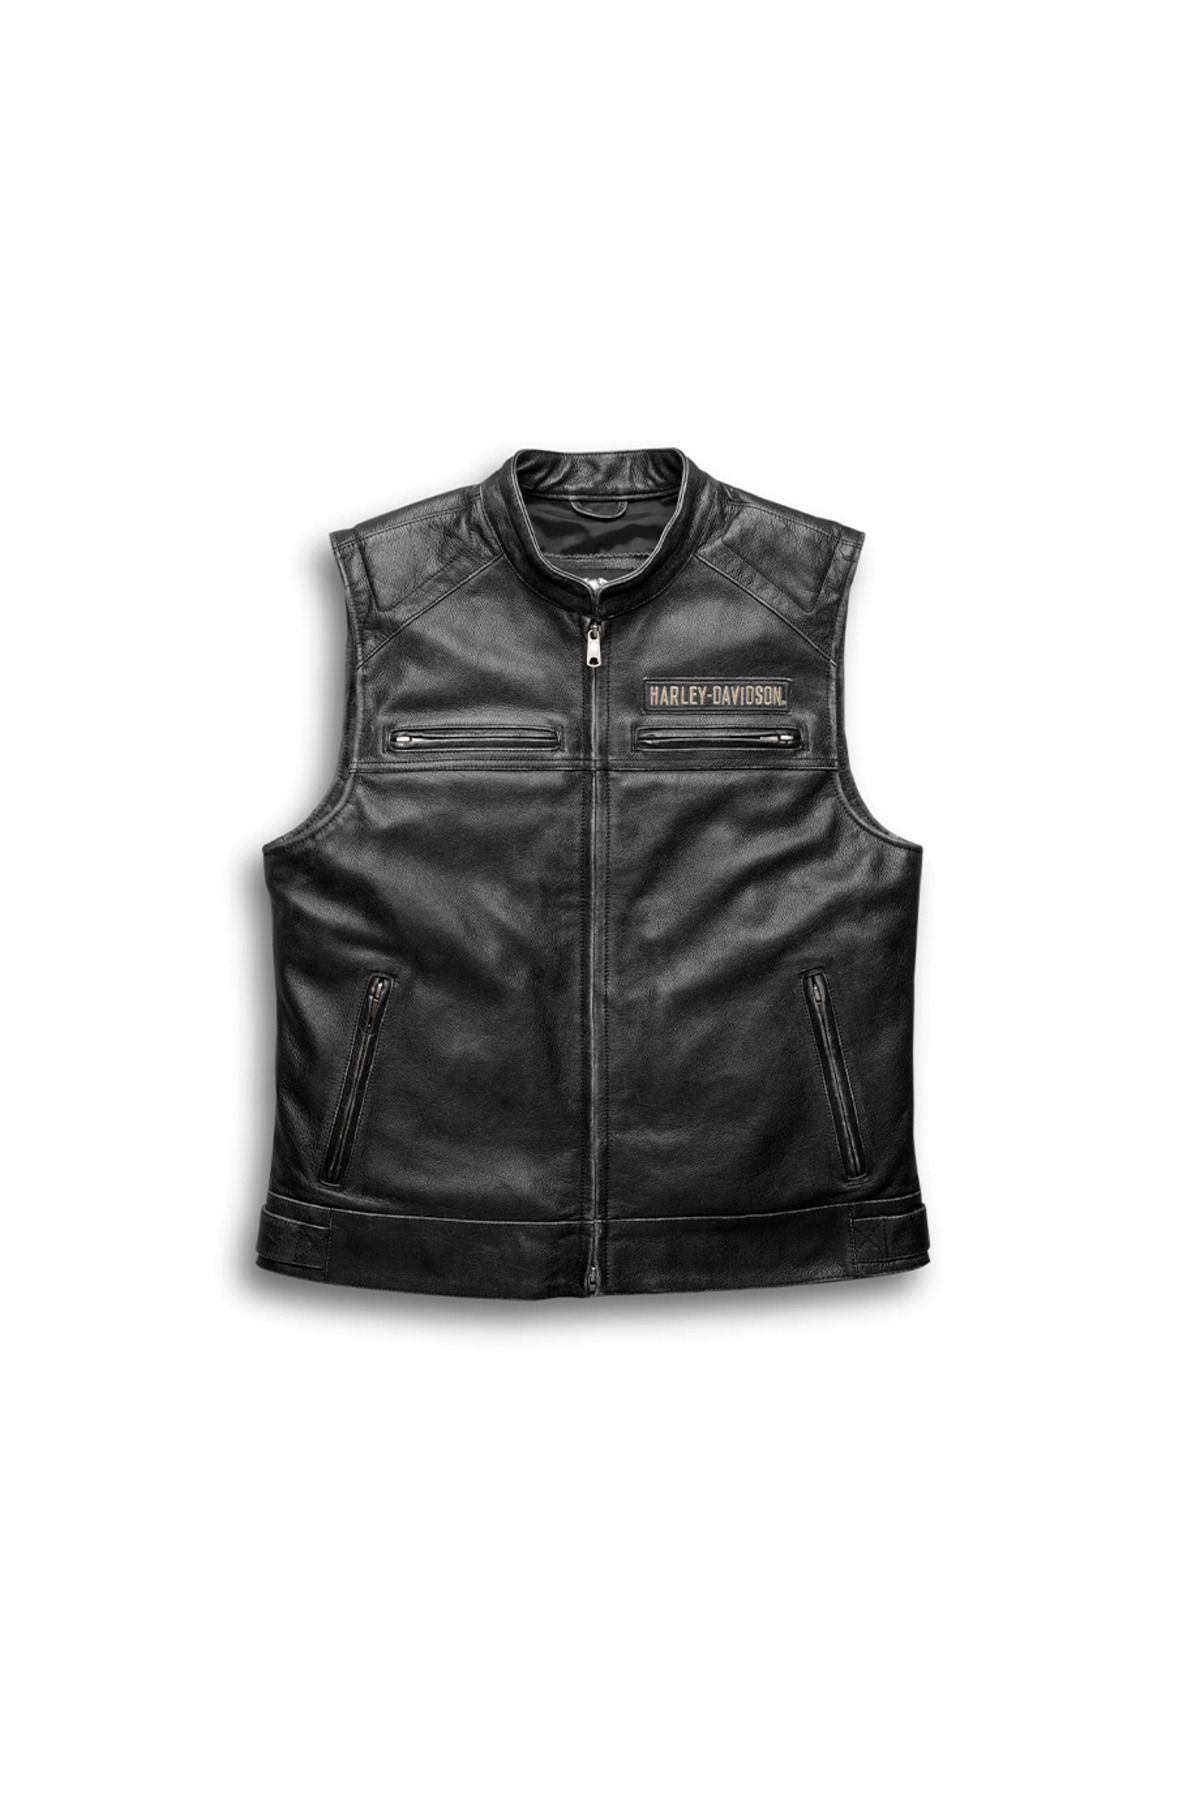 Harley Davidson Harley-davidson Men's Passing Link Leather Vest